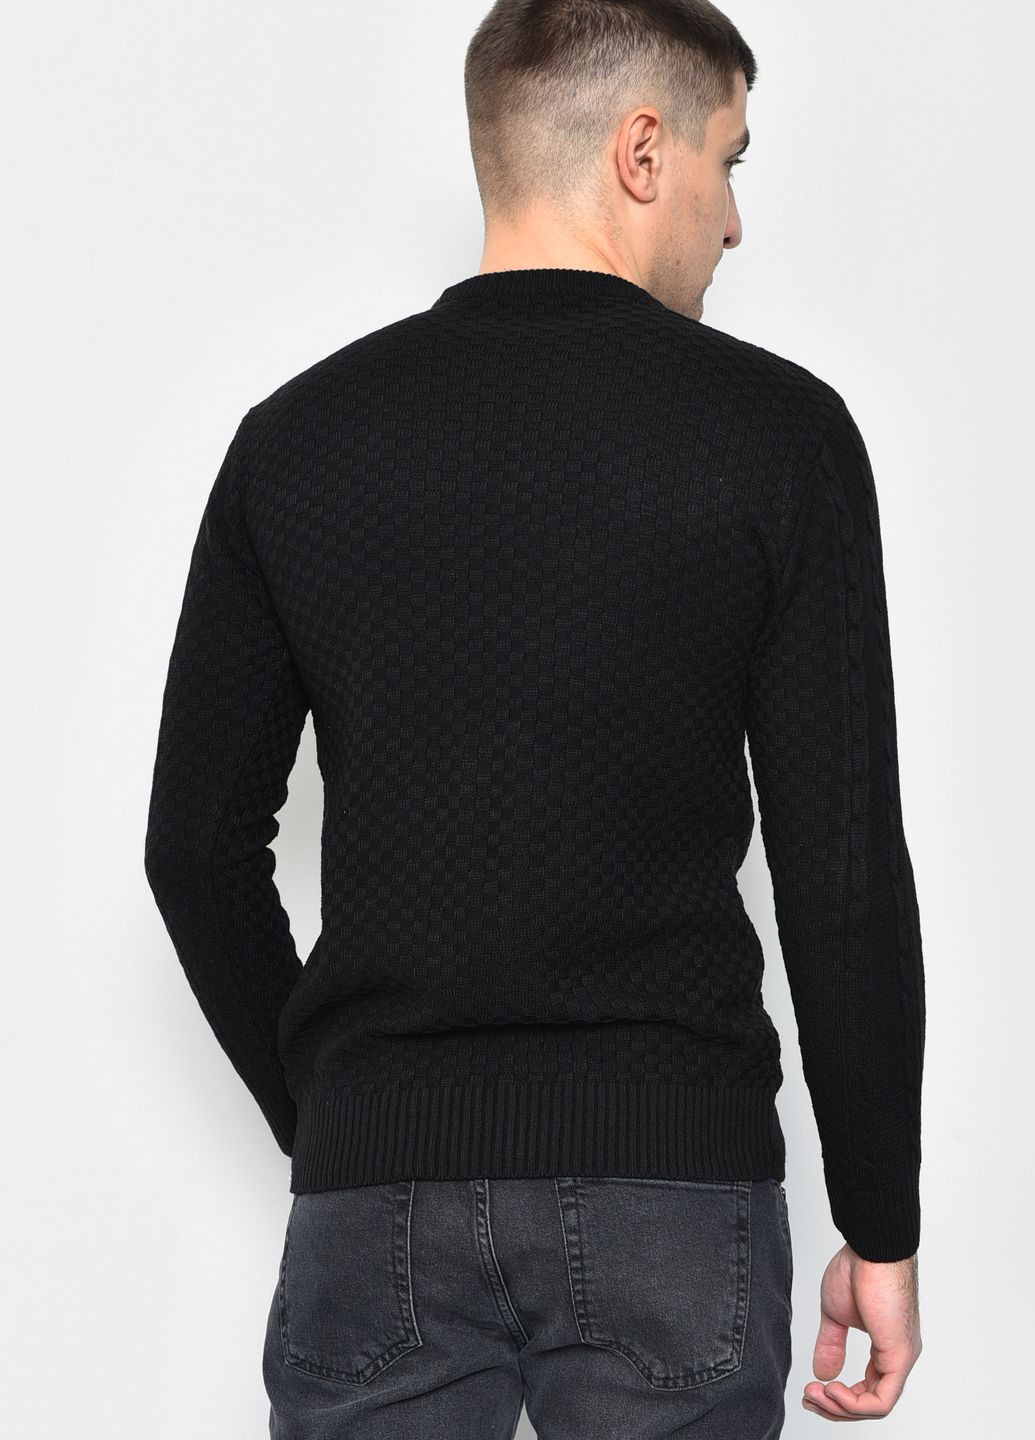 Черный демисезонный свитер мужской однотонный черного цвета пуловер Let's Shop